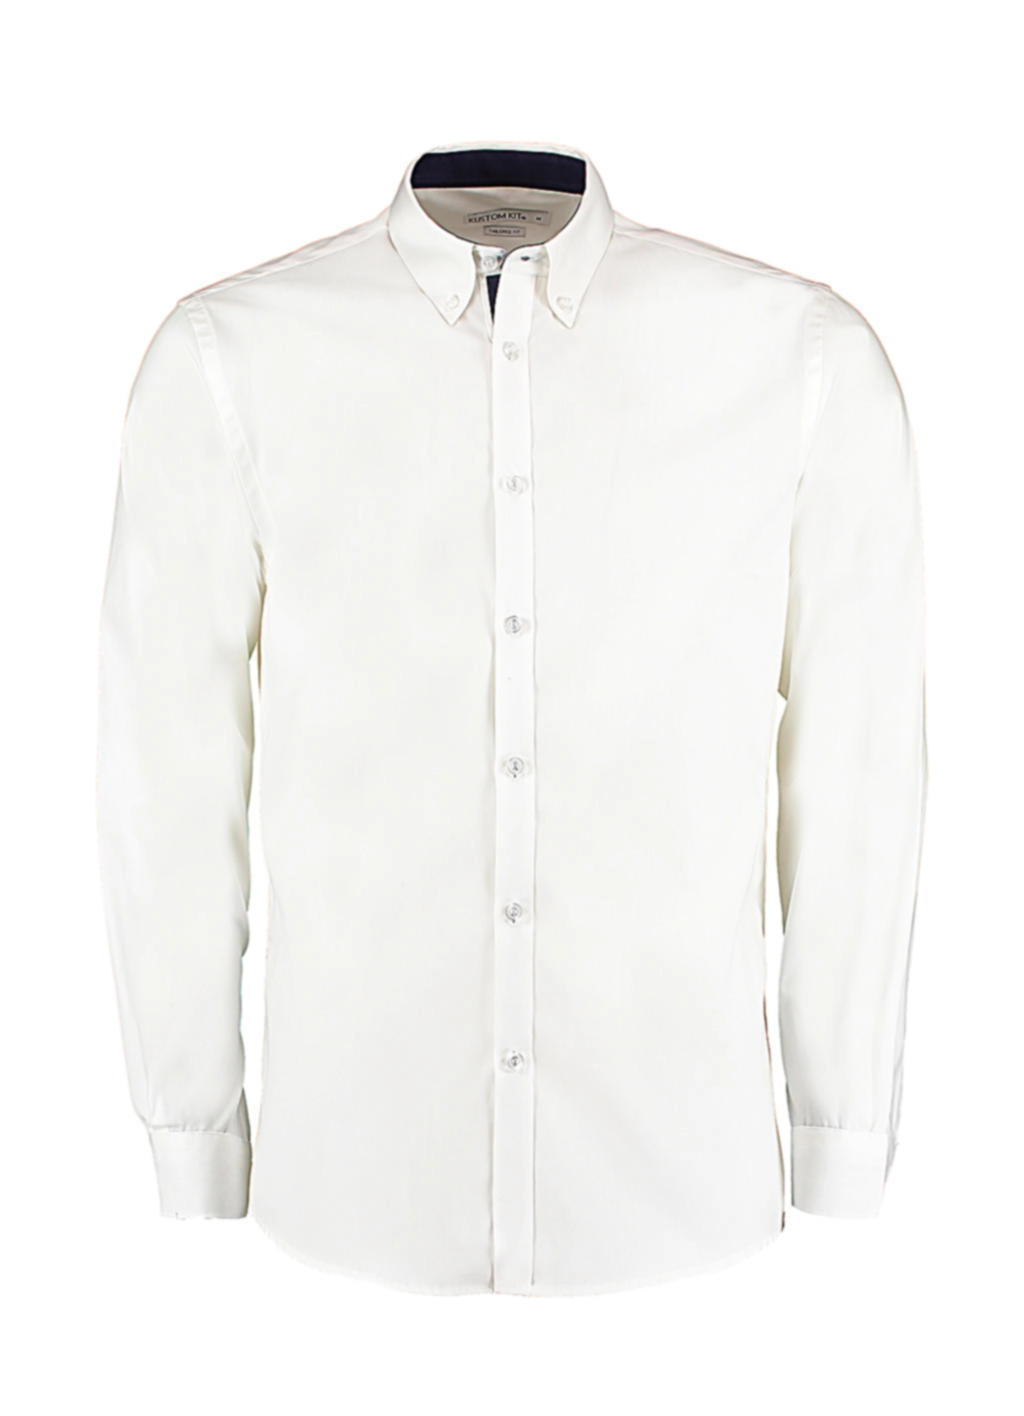 Tailored Fit Premium Contrast Oxford Shirt zum Besticken und Bedrucken in der Farbe White/Navy mit Ihren Logo, Schriftzug oder Motiv.